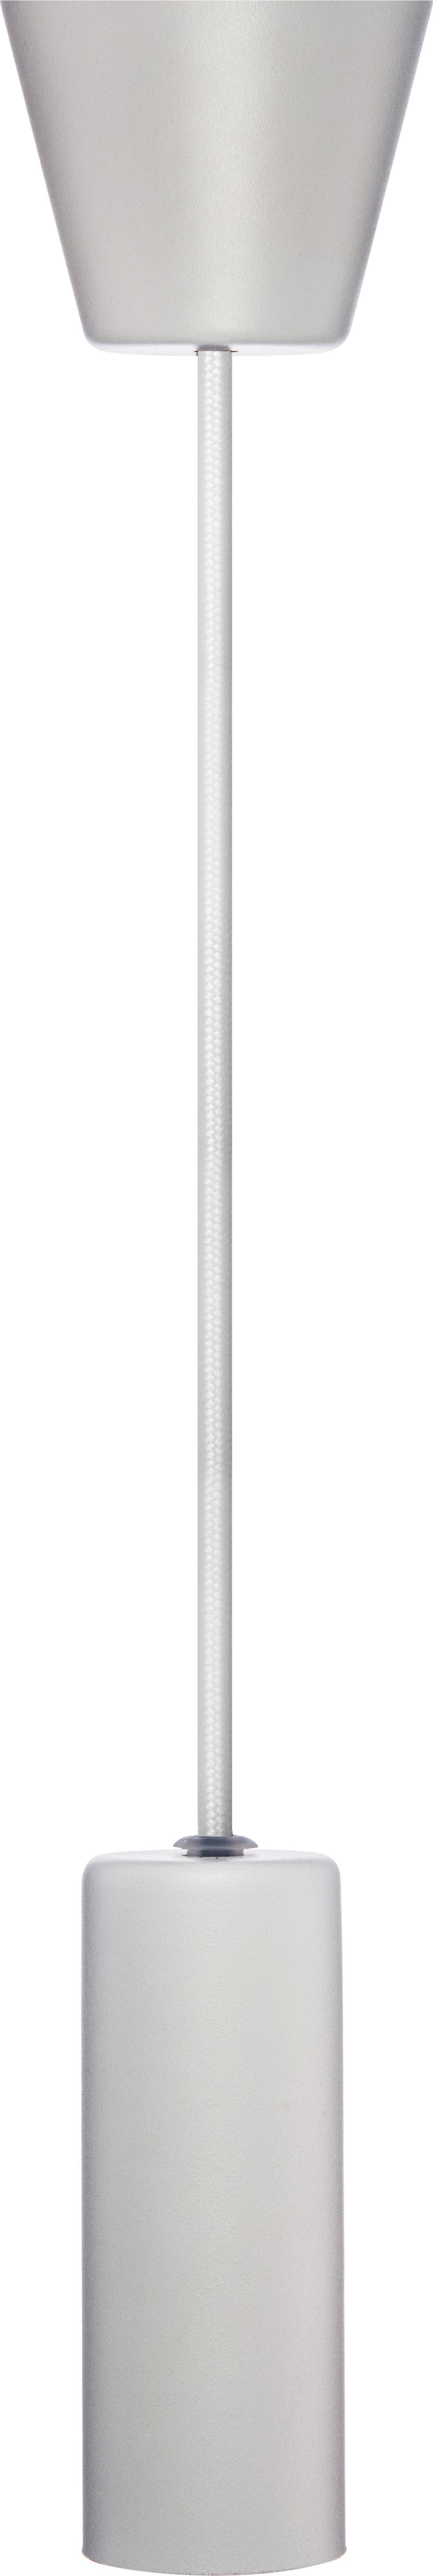 Image of Sylvania Sylpendant White Metal Pendant Light